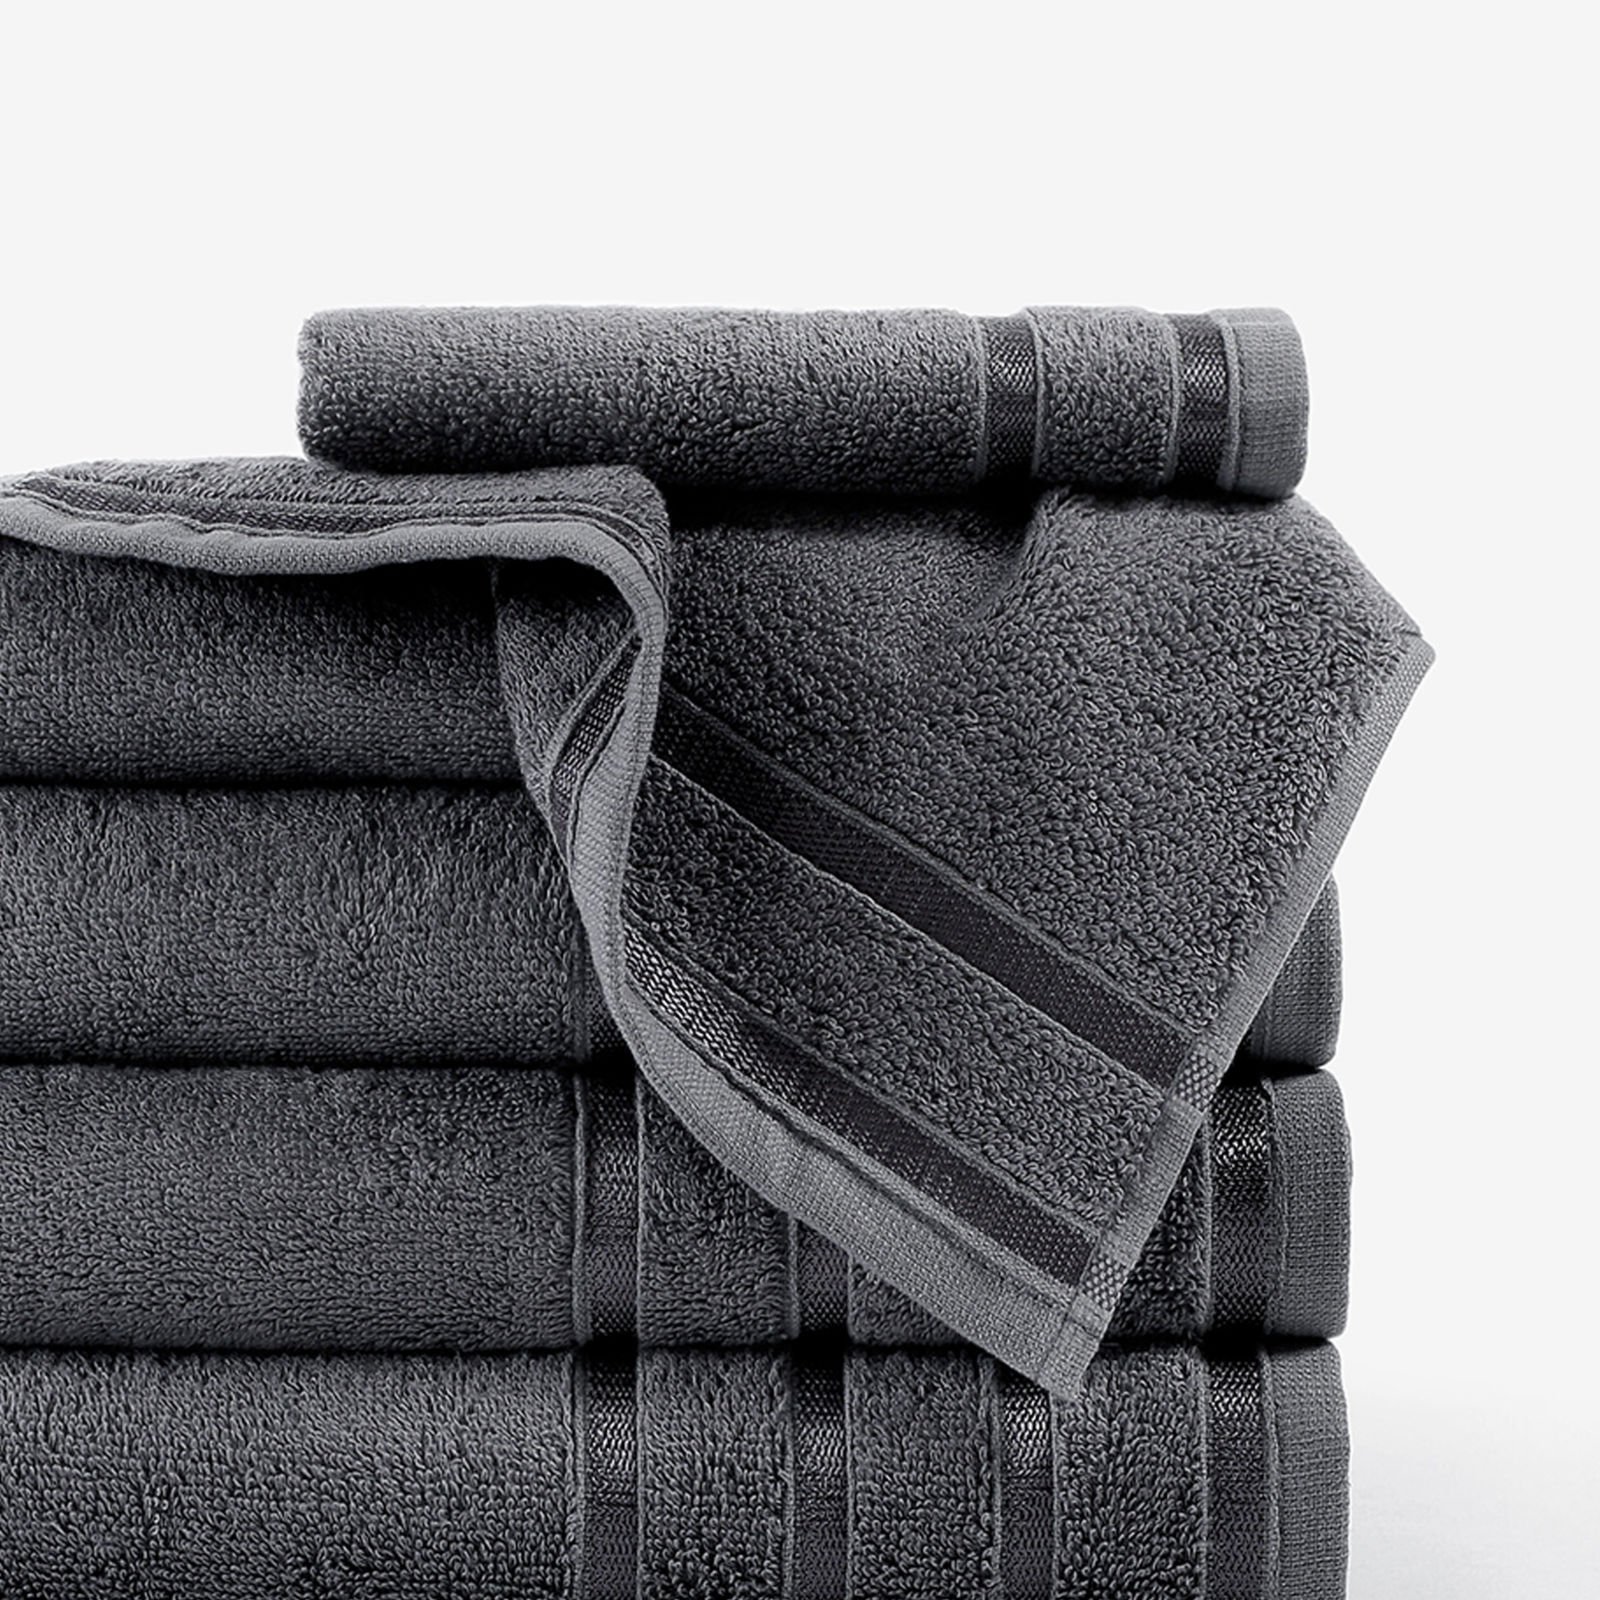 Bambusový ručník/osuška Bamboo Lux - tmavě šedý